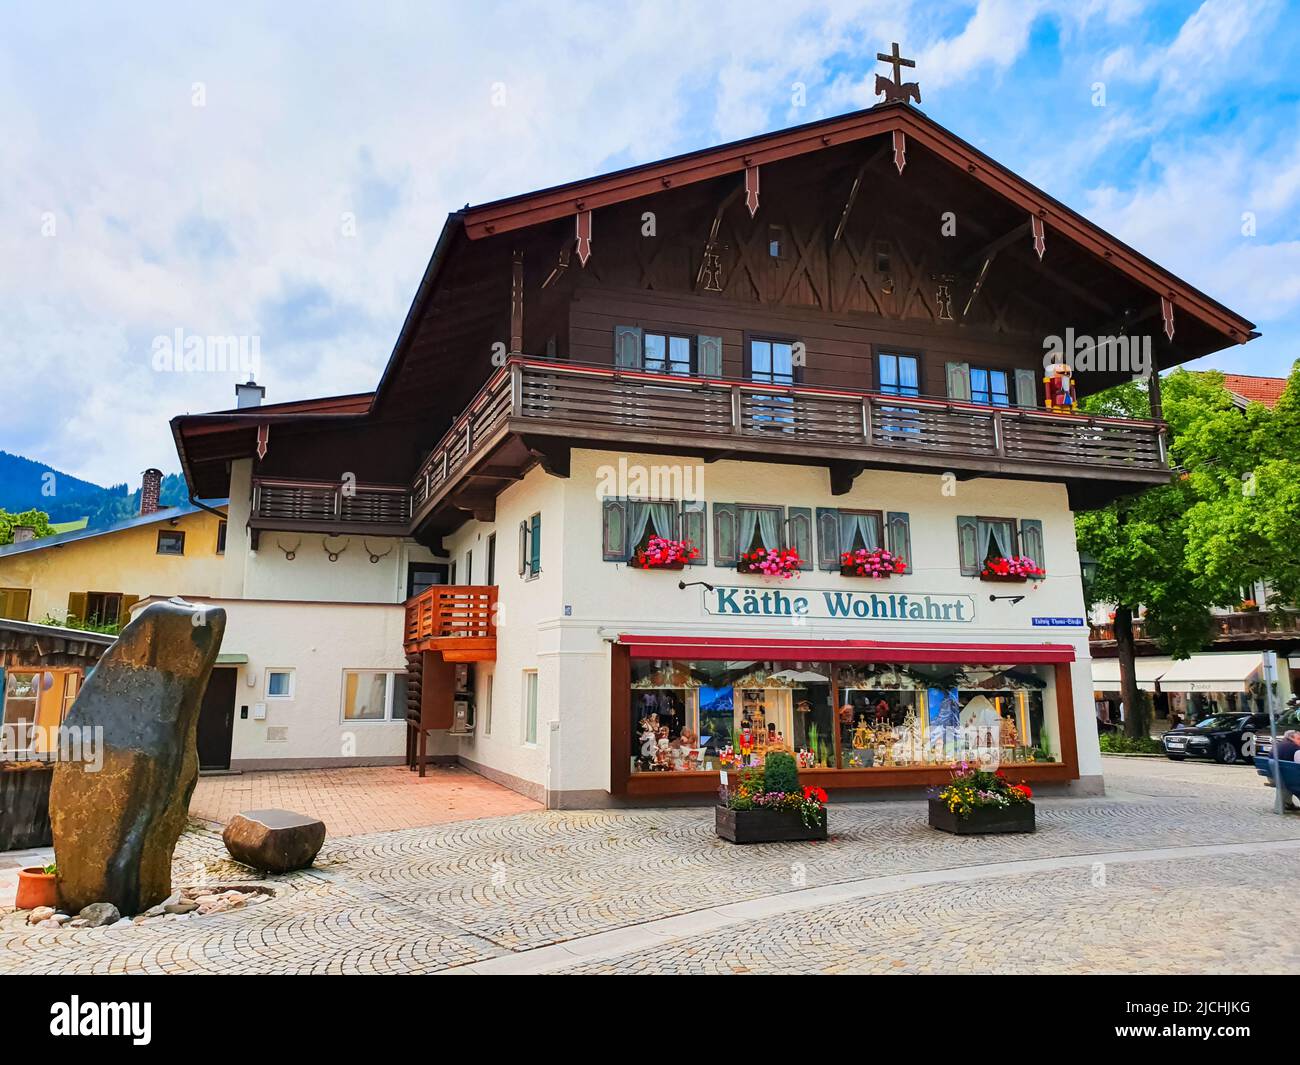 Oberammergau, Allemagne - 03 juillet 2021: Boutique de souvenirs de Kathe Wohlfahrt dans la ville d'Oberammergau en Bavière, Allemagne Banque D'Images